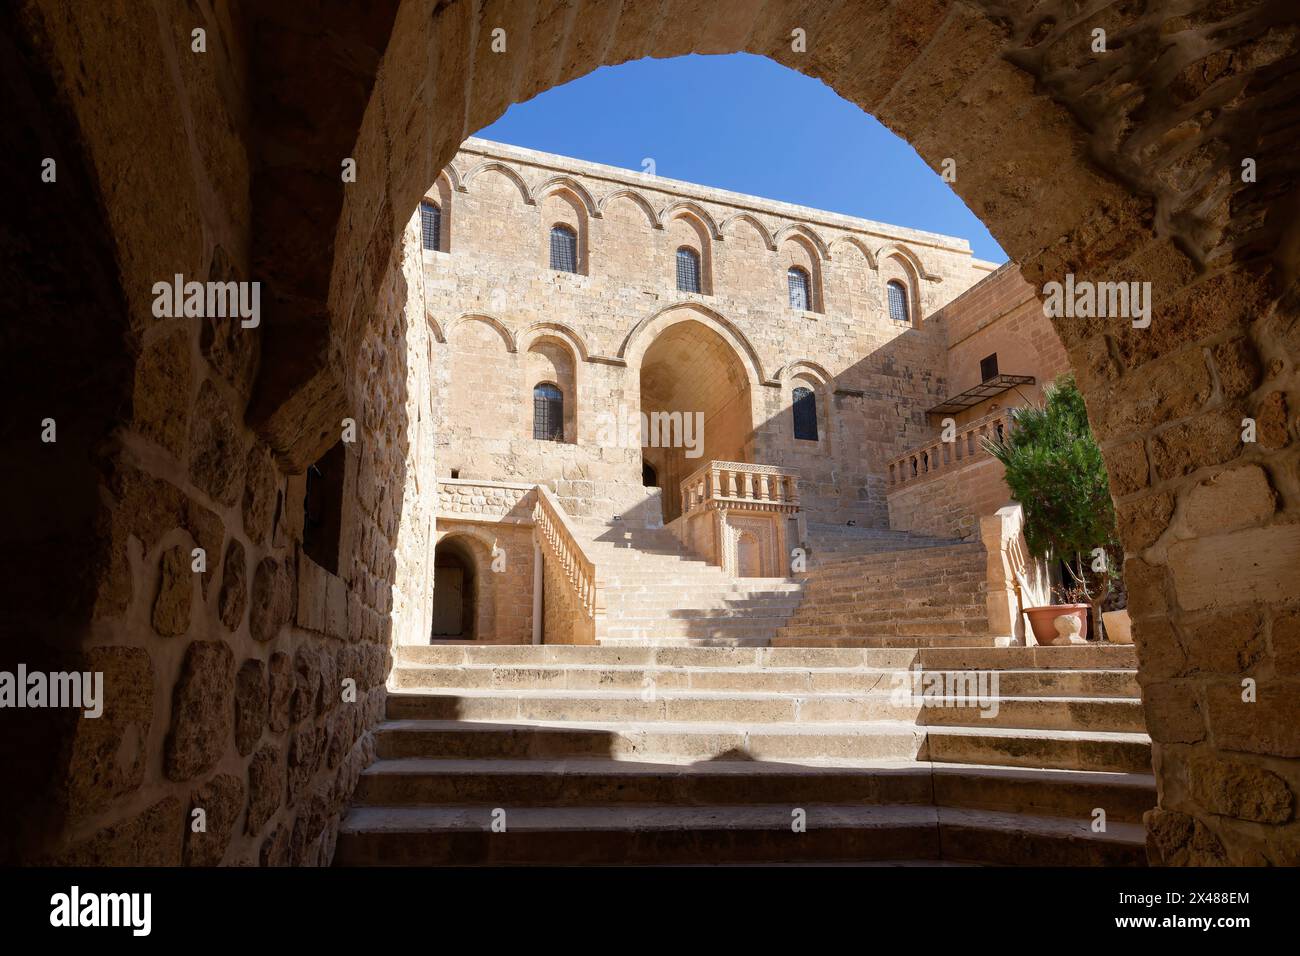 Entrée au monastère Saint Ananias connu sous le nom de Deyrulzafaran ou monastère du safran vu à travers une arche, Mardin, Turquie Banque D'Images